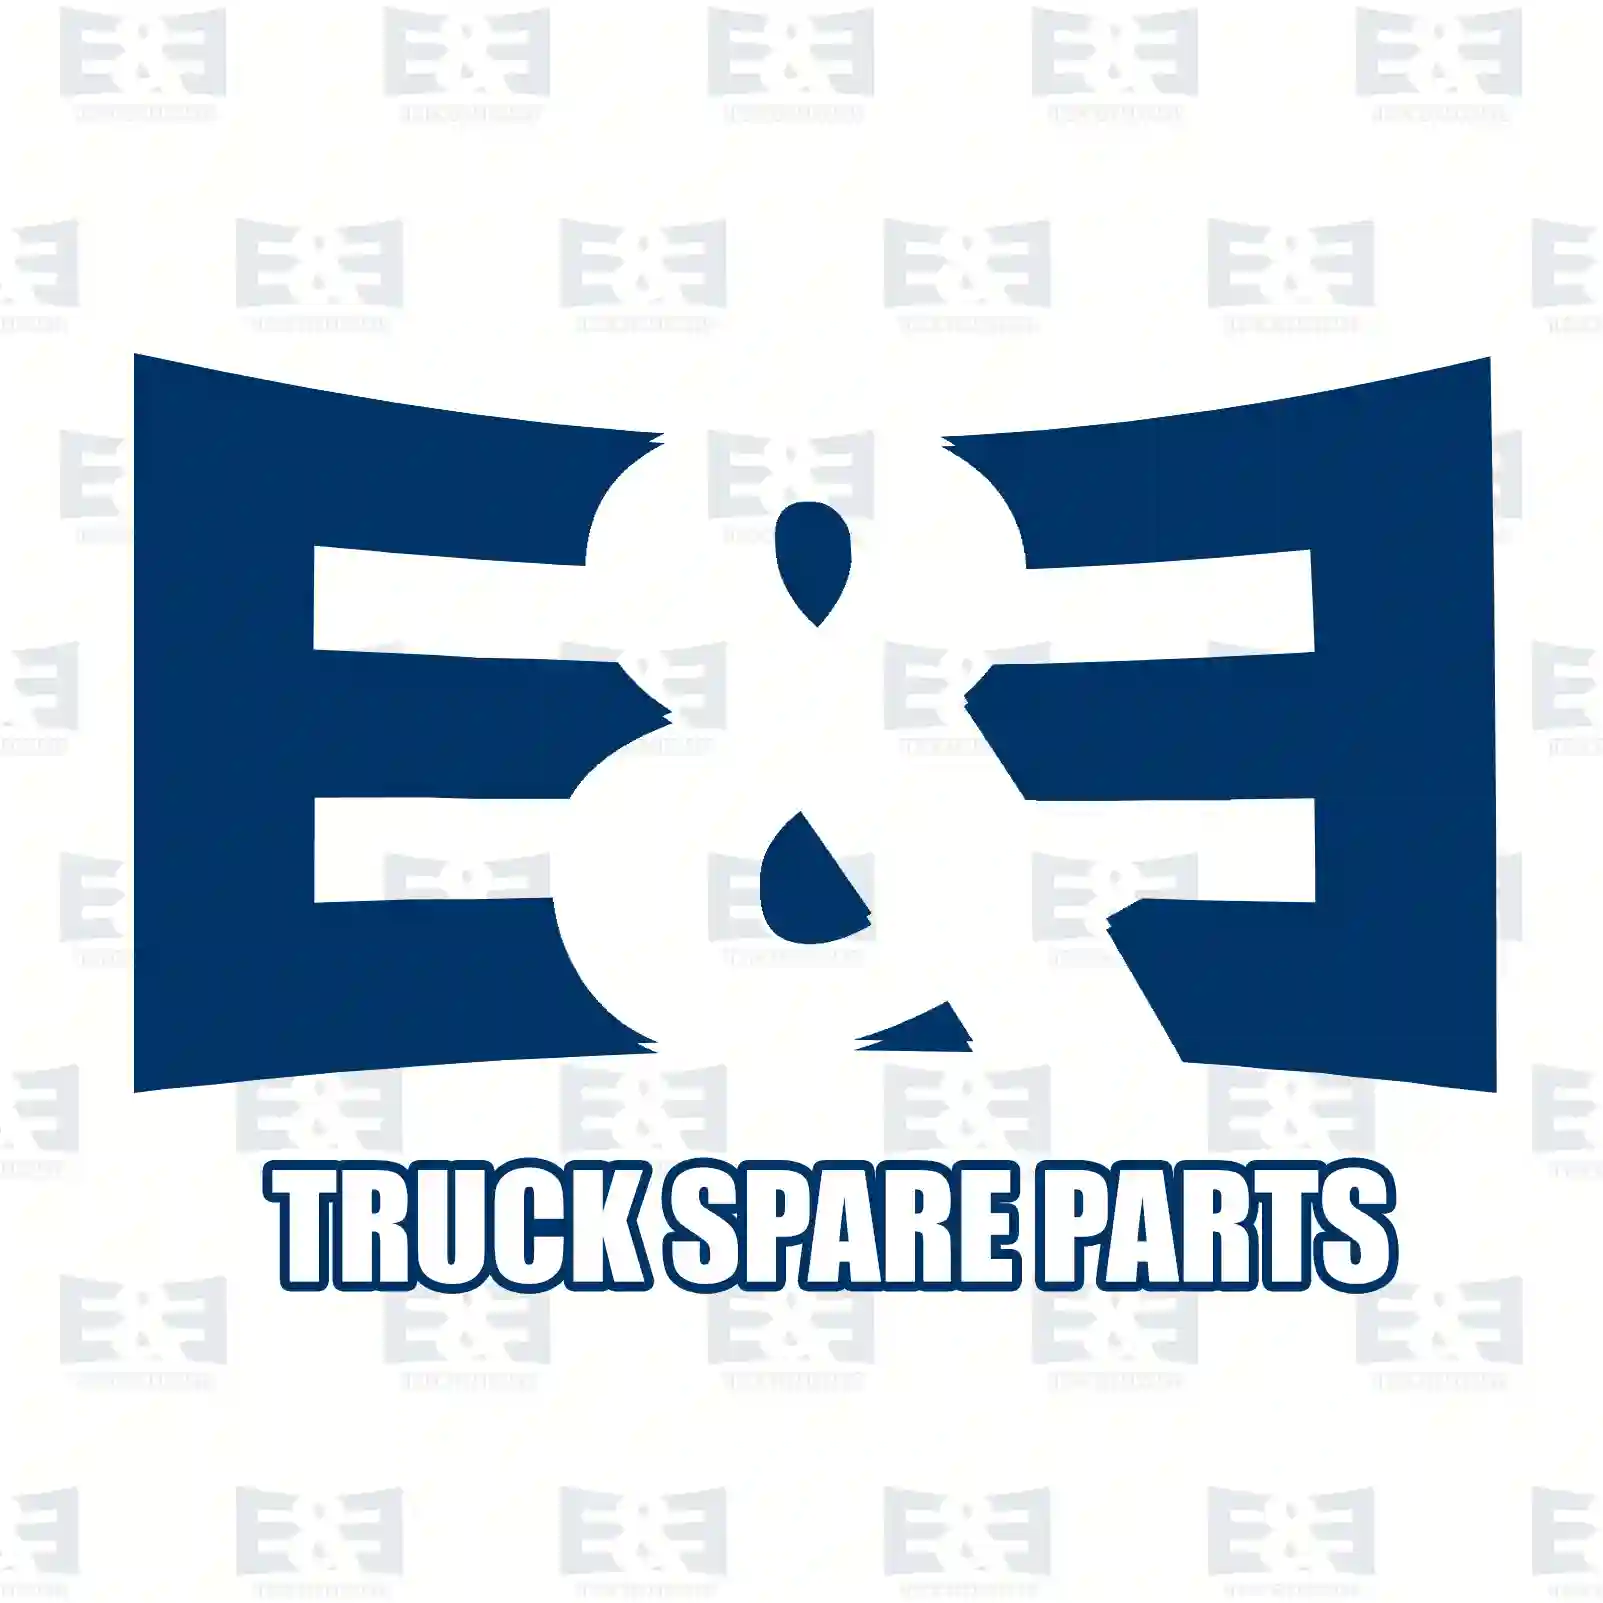 Ball socket, 2E2278954, 7408171932, 8171932, ZG40150-0008 ||  2E2278954 E&E Truck Spare Parts | Truck Spare Parts, Auotomotive Spare Parts Ball socket, 2E2278954, 7408171932, 8171932, ZG40150-0008 ||  2E2278954 E&E Truck Spare Parts | Truck Spare Parts, Auotomotive Spare Parts